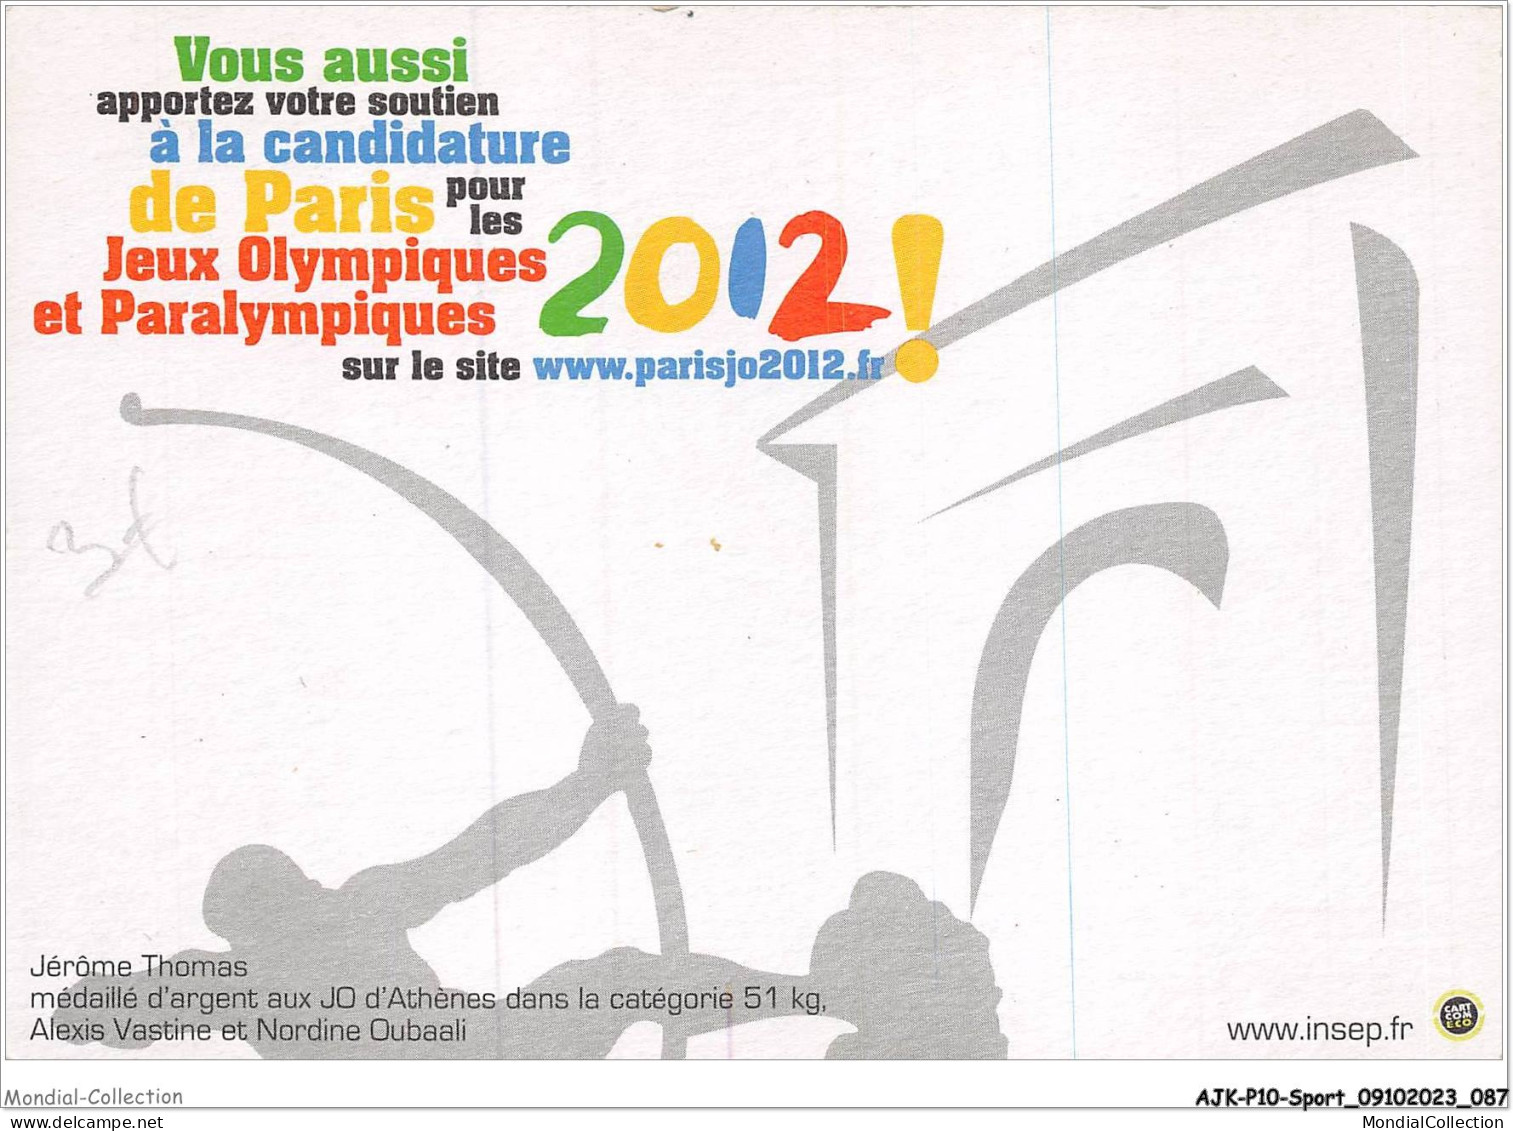 AJKP10-1000 - SPORT - LES SPORTIFS DE L'INSEP SUPPORTERS DE LA CANDIDATURE DE PARIS POUR LES JEUX OLYMPIQUES 2012 - Boxe